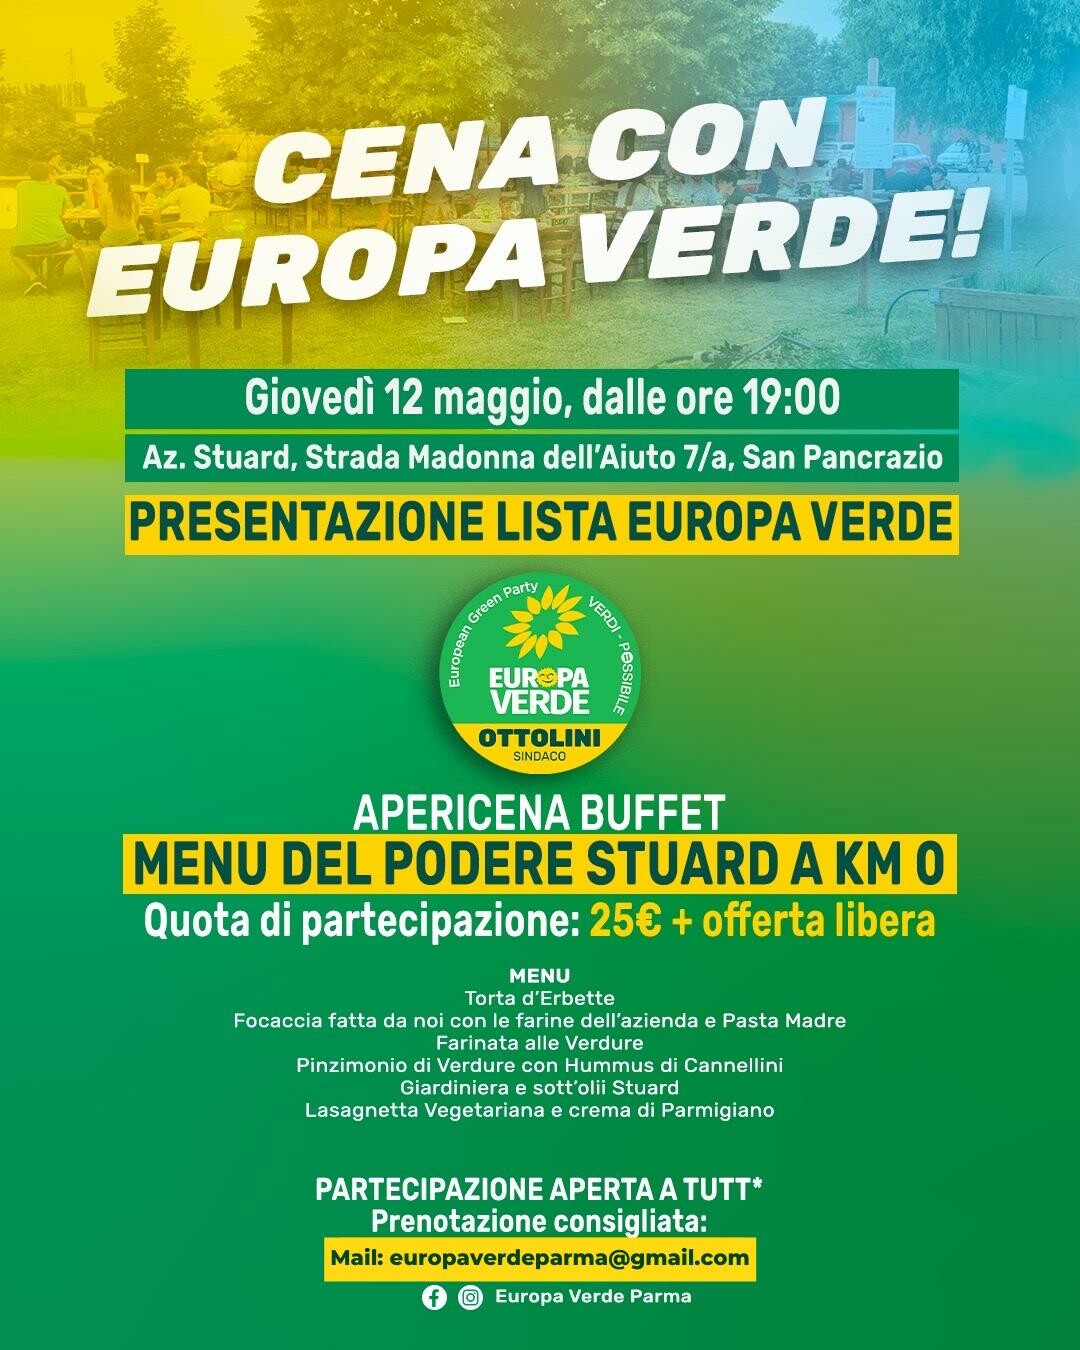 PRESENTAZIONE LISTA ELETTORALE EUROPA VERDE - PARMA  Giovedì 12 maggio Europa Verde - Parma presenterà la propria lista elettorale alla cittadinanza.